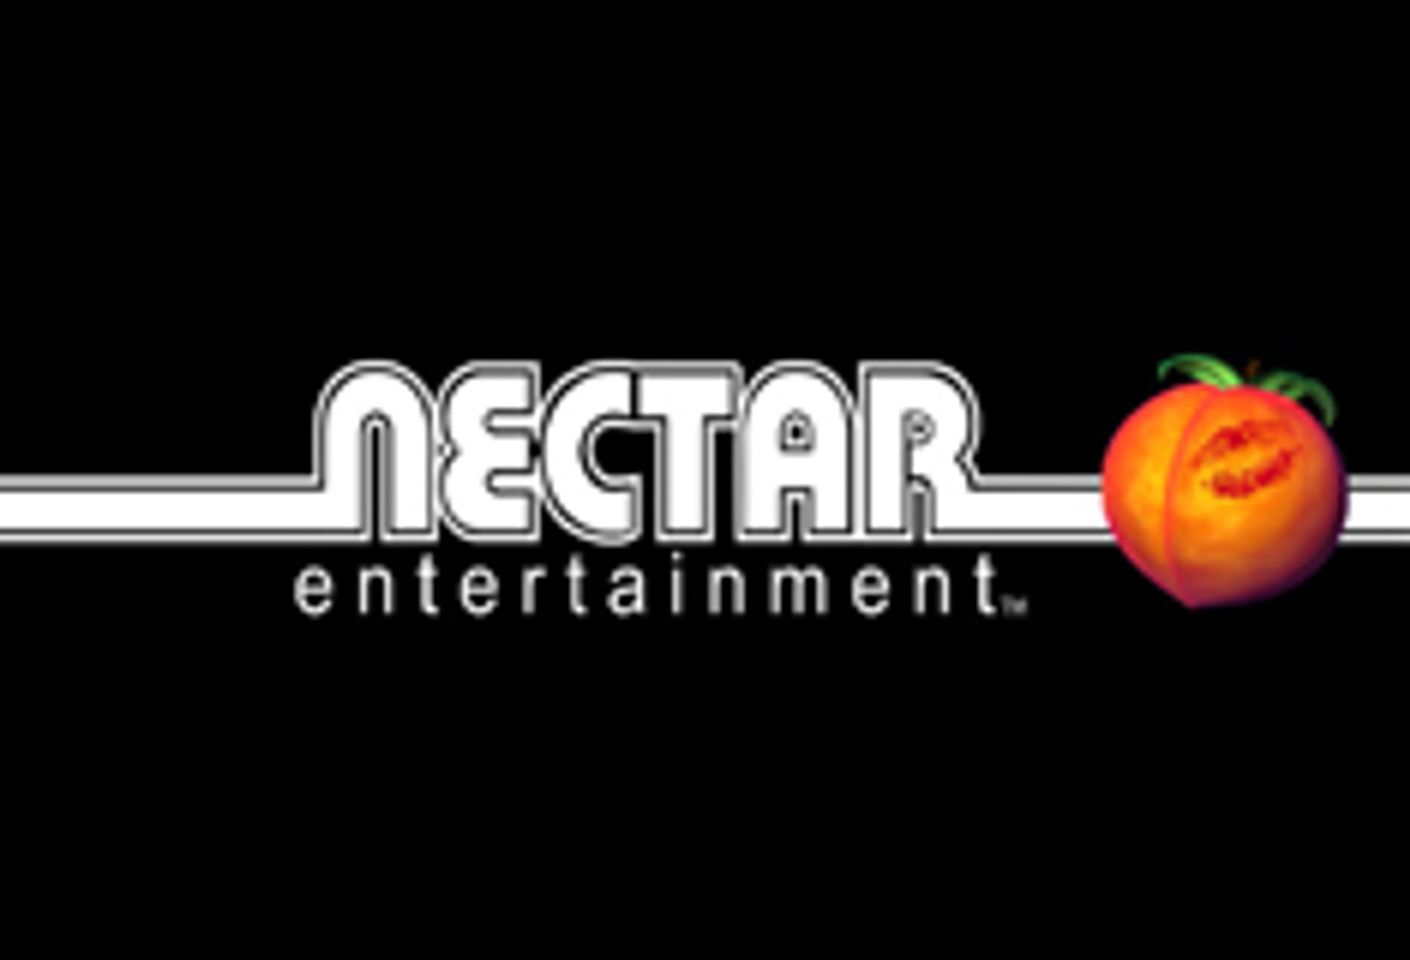 Stephanie Hickman Teams with Nectar Entertainment